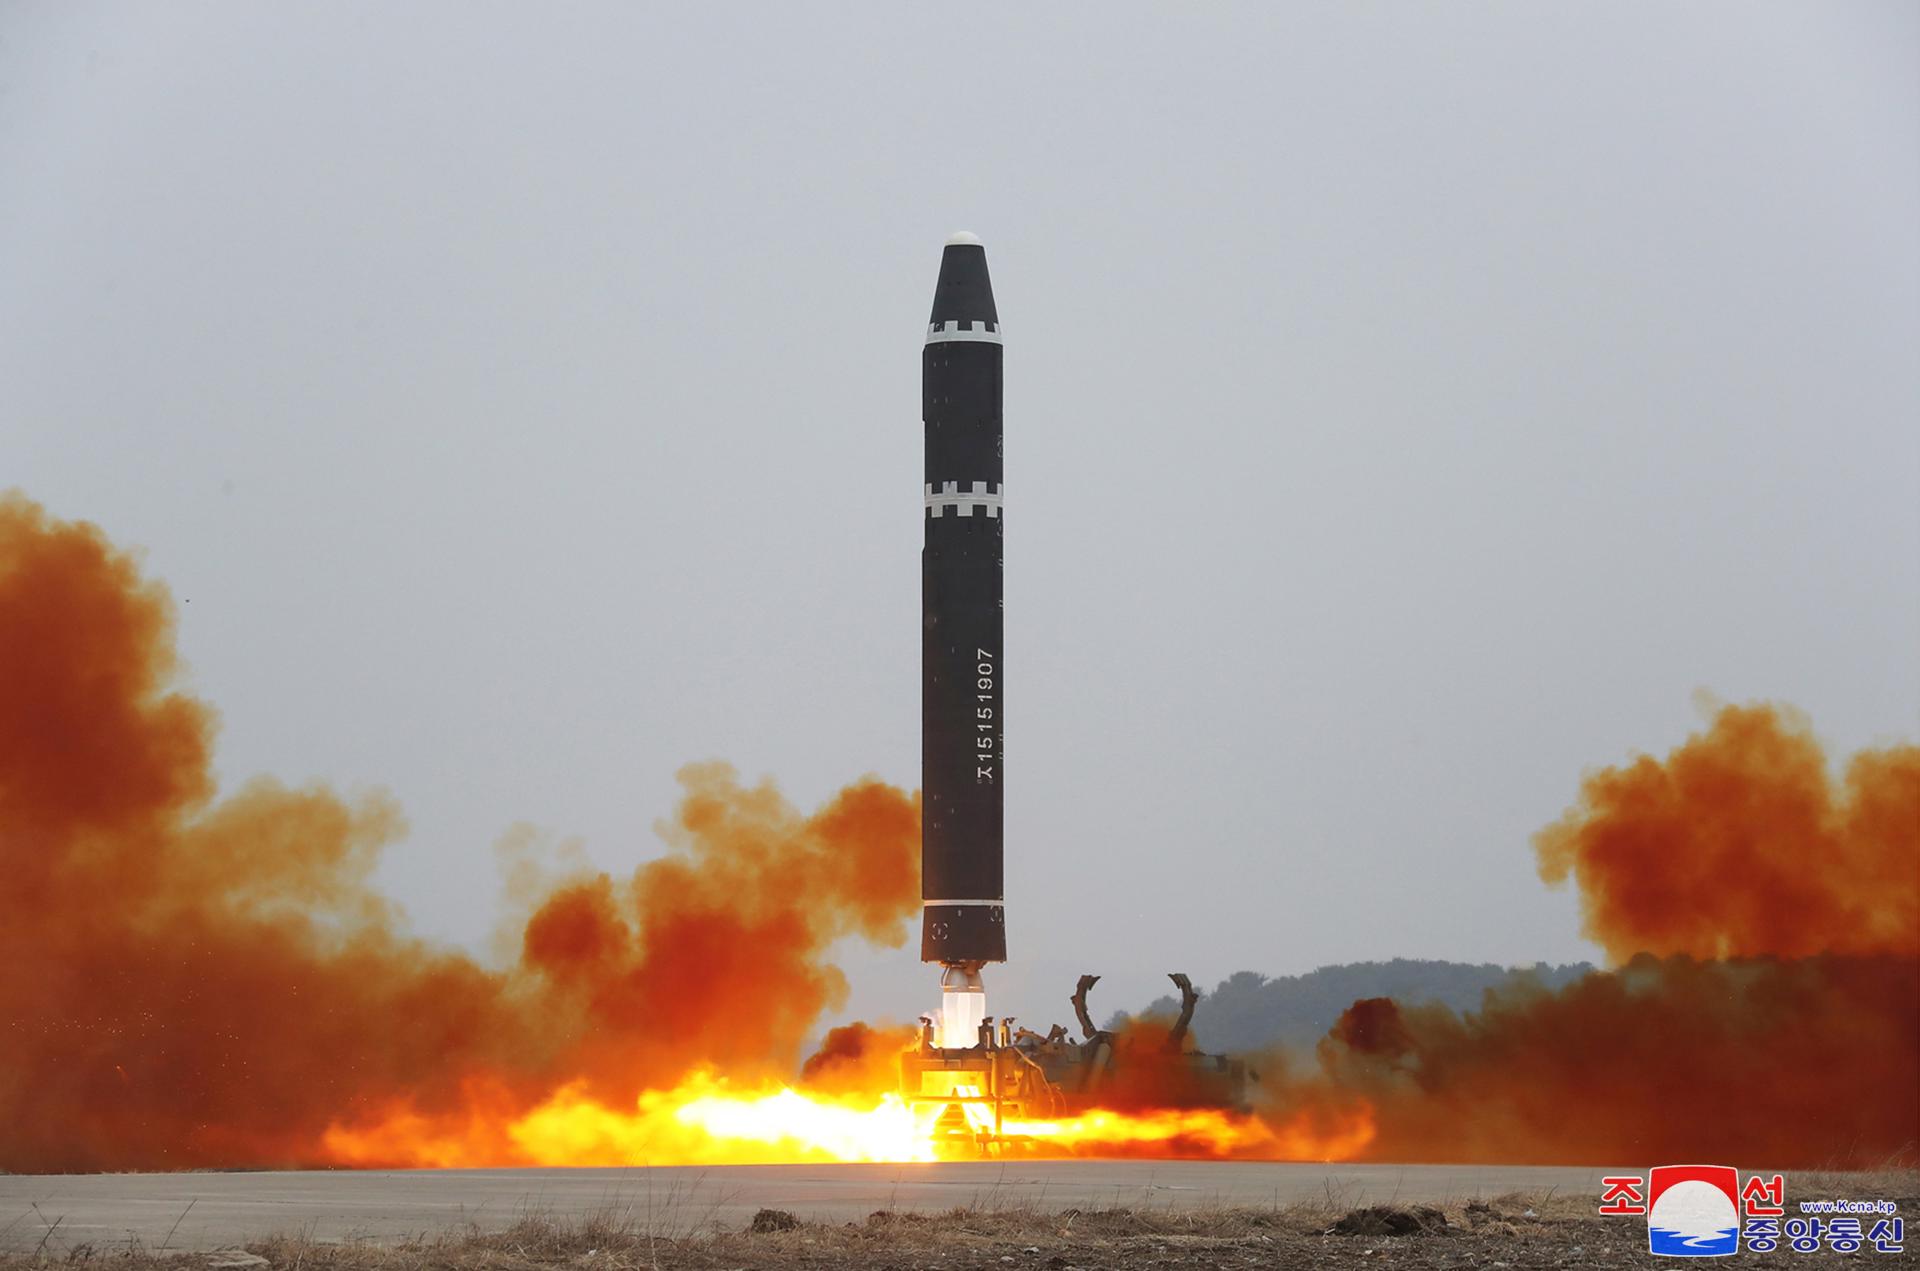 Fotografía publicada por la Agencia Central de Noticias de Corea del Norte (KCNA) del lanzamiento de un misil balístico intercontinental (ICBM) Hwasong-15 en el Aeropuerto Internacional de Pyongyang el pasado 18 de febrero.